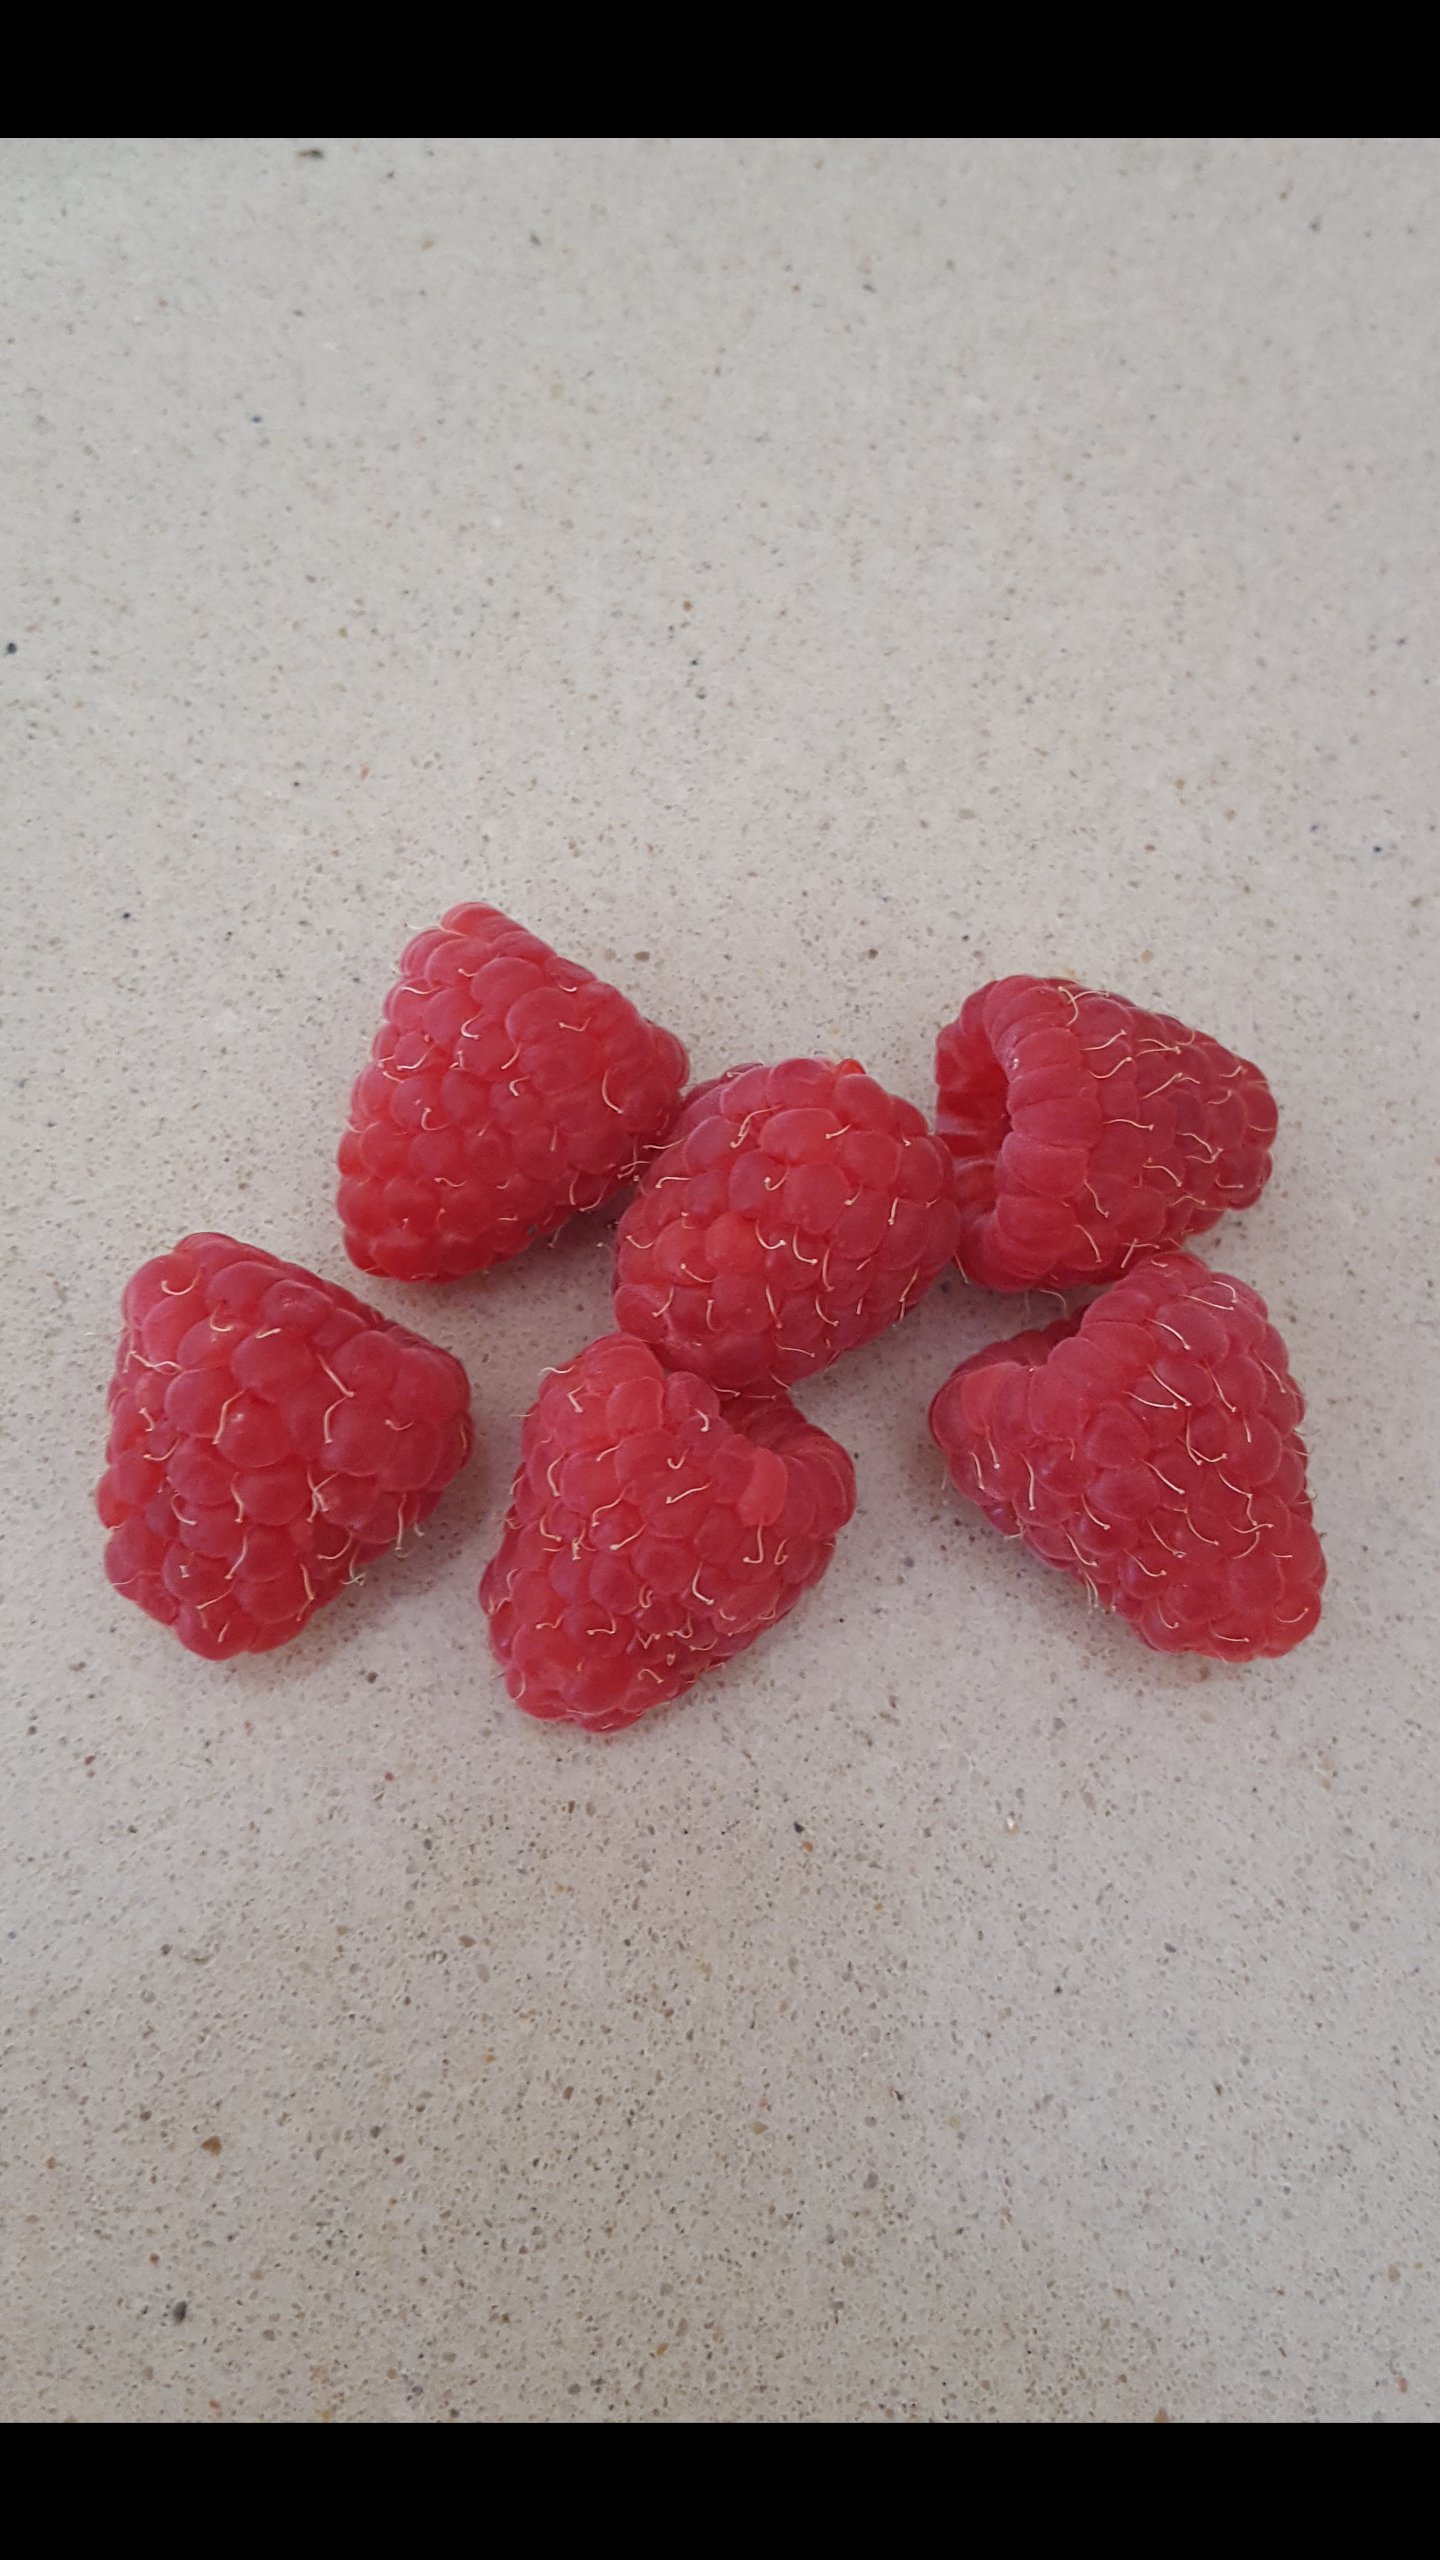 FRAMBUESA rubus idaeus - raspberry - delicioso FRUTO DE BOSQUE 100 semillas 